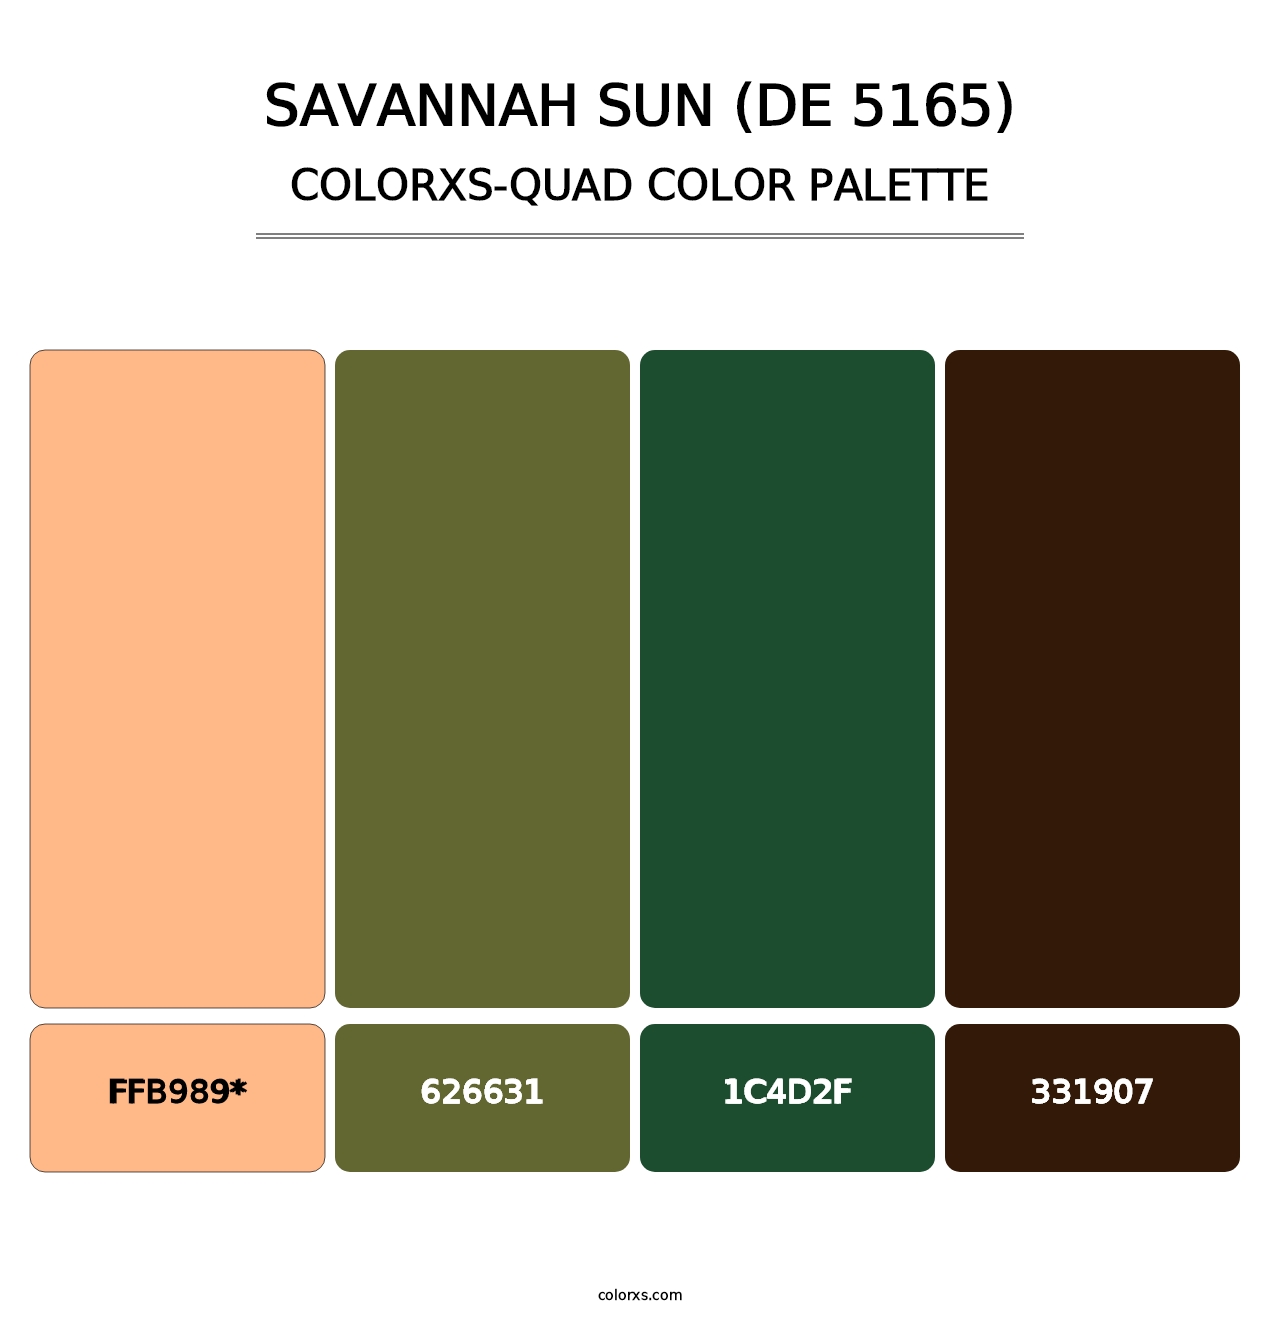 Savannah Sun (DE 5165) - Colorxs Quad Palette